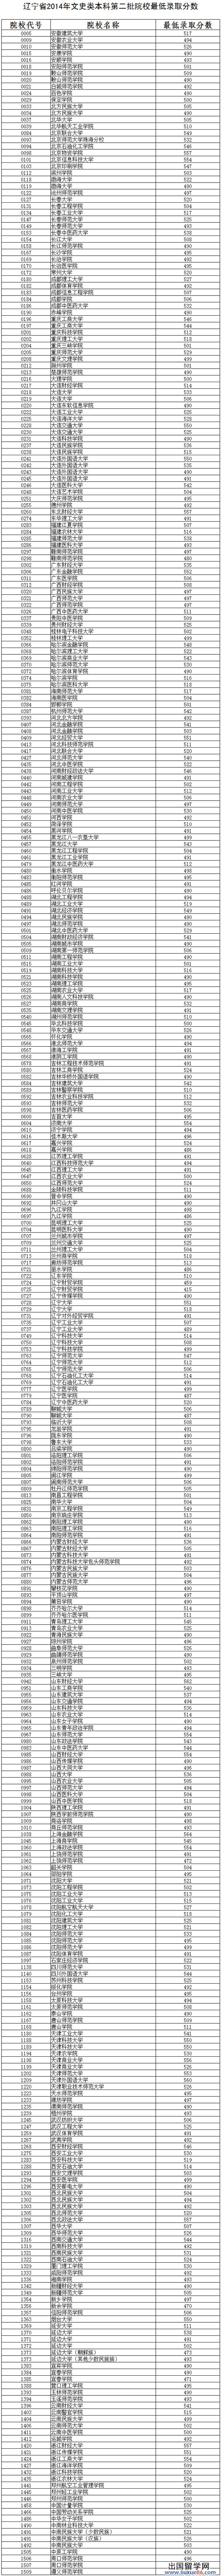 辽宁省2014年文史类本科第二批院校最低录取分数